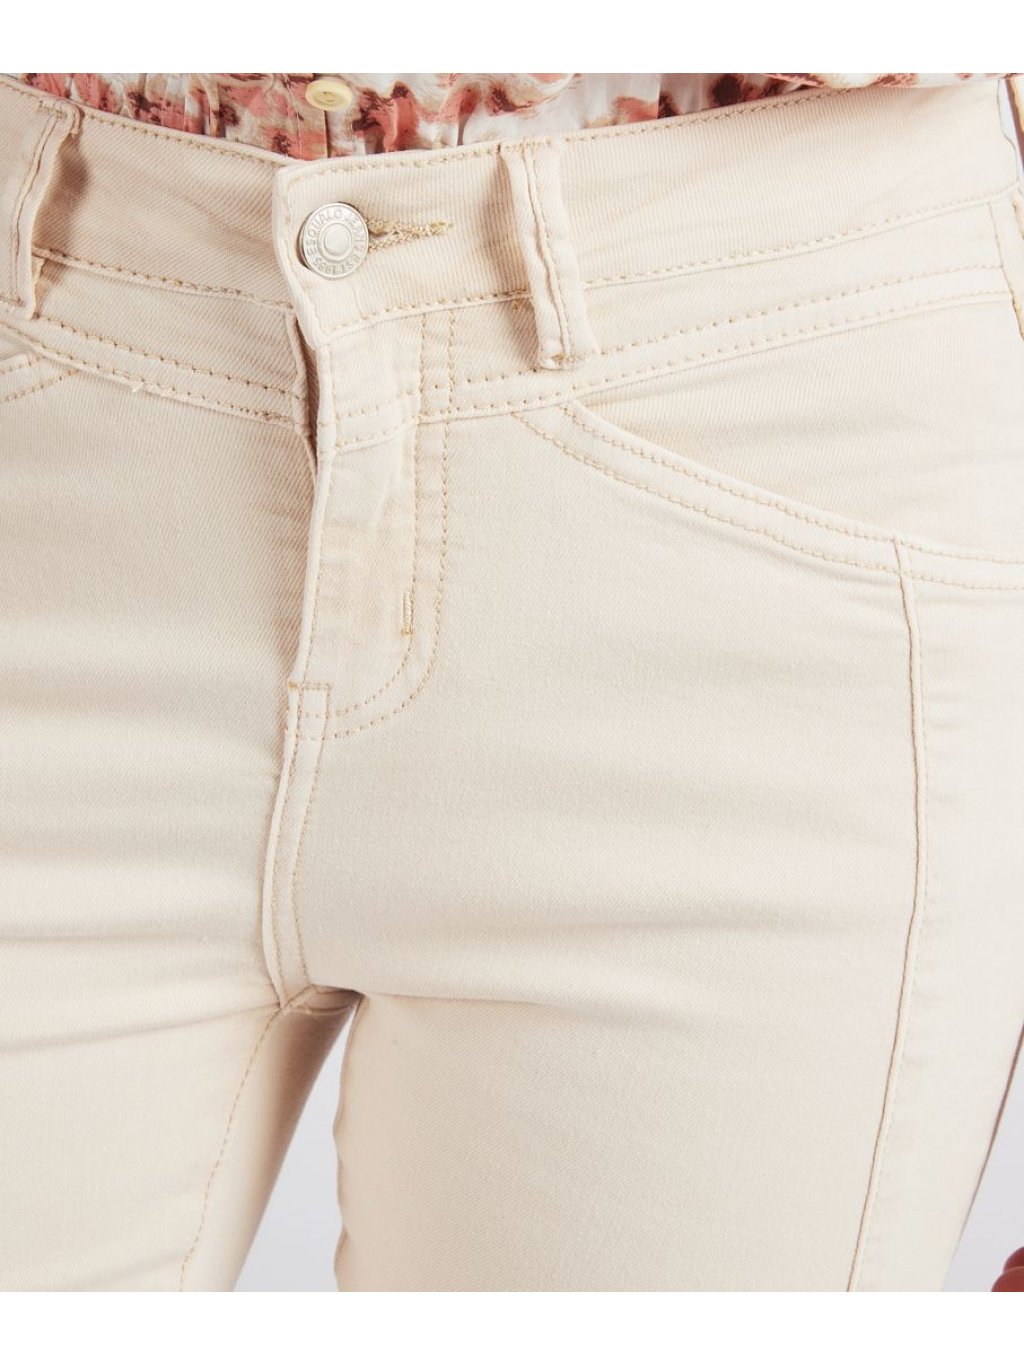 Kalhoty Esqualo12202 přírodní džíny slim fit